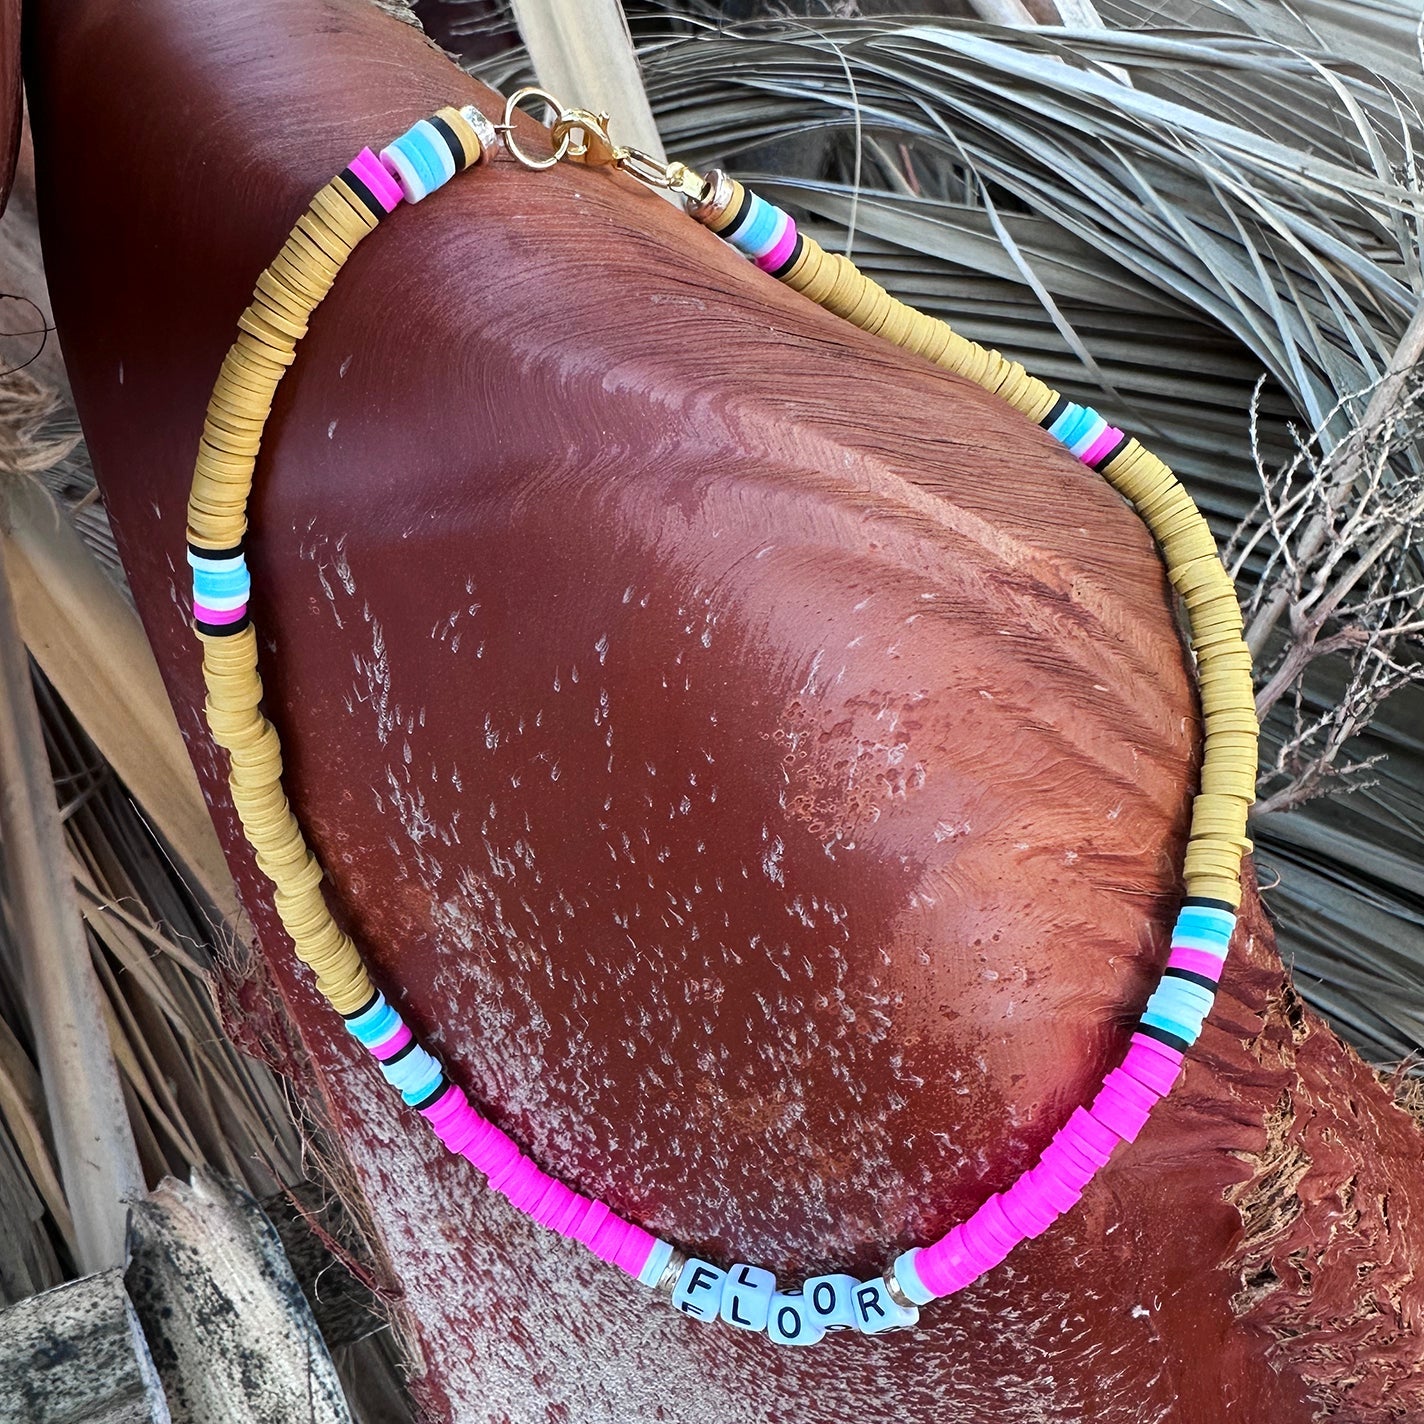 Pinky Kiwi Customised Necklace